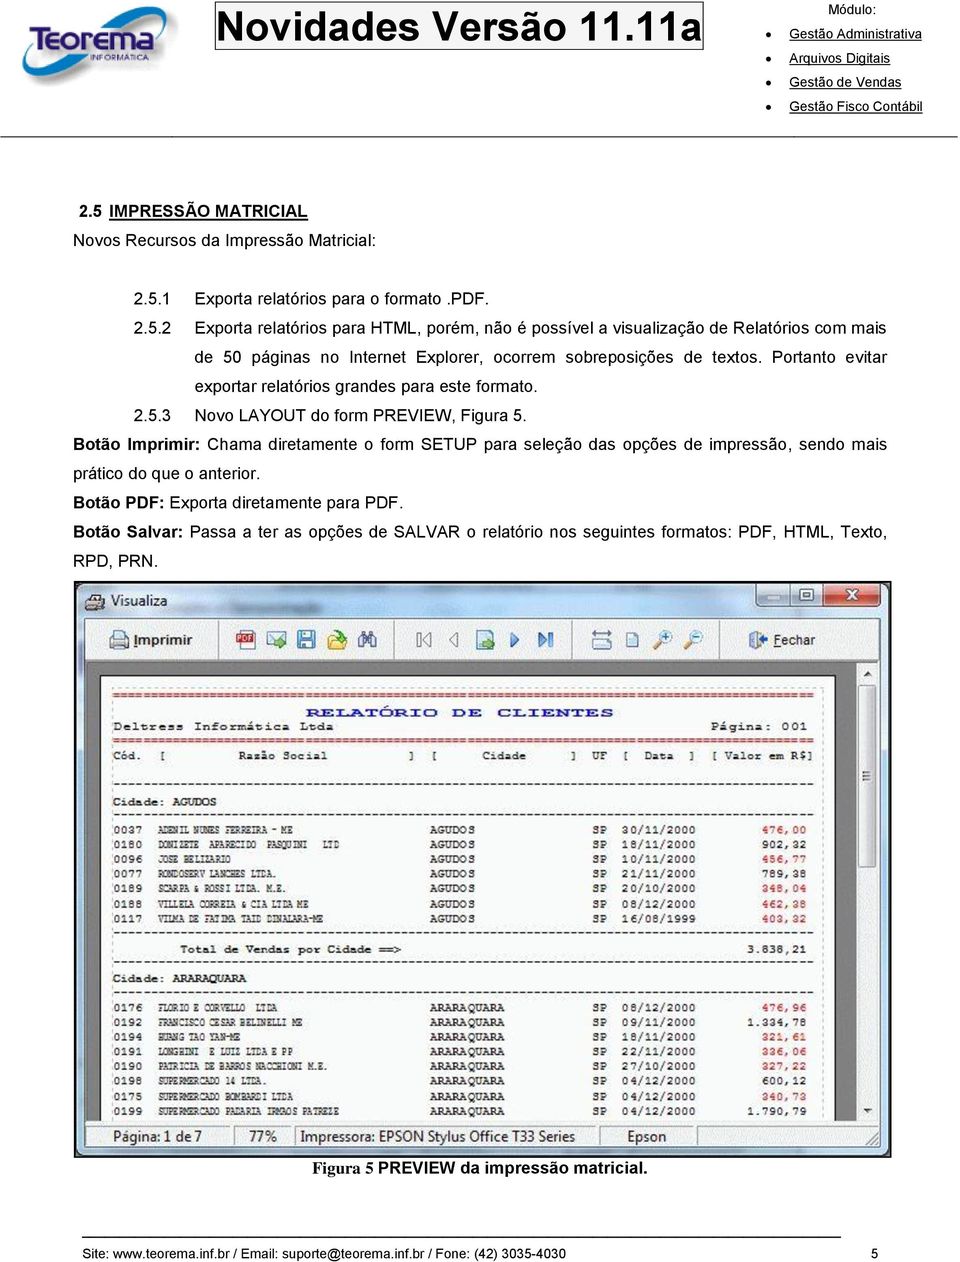 Botão Imprimir: Chama diretamente o form SETUP para seleção das opções de impressão, sendo mais prático do que o anterior. Botão PDF: Exporta diretamente para PDF.